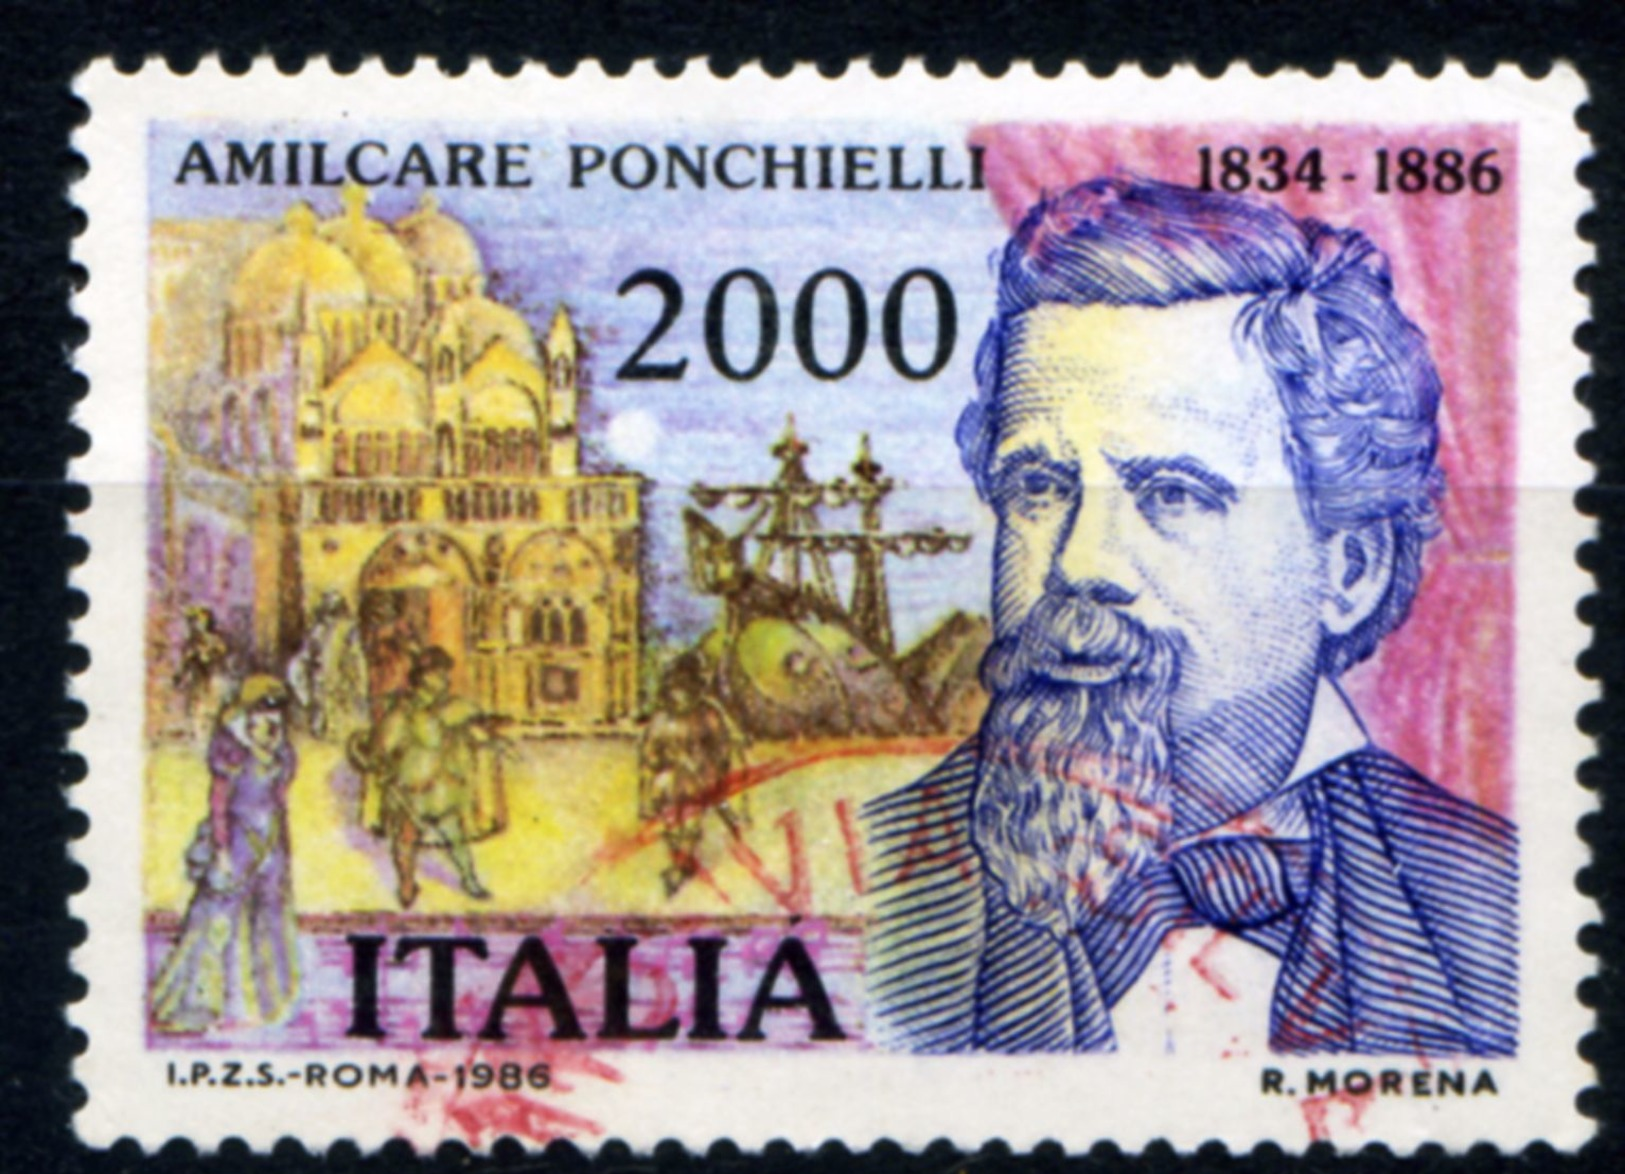 457> ITALIA 1986 < AMILCARE PONCHIELLI > Da Lire 2.000 = Valore Catalogo € 1,50 - 1981-90: Used